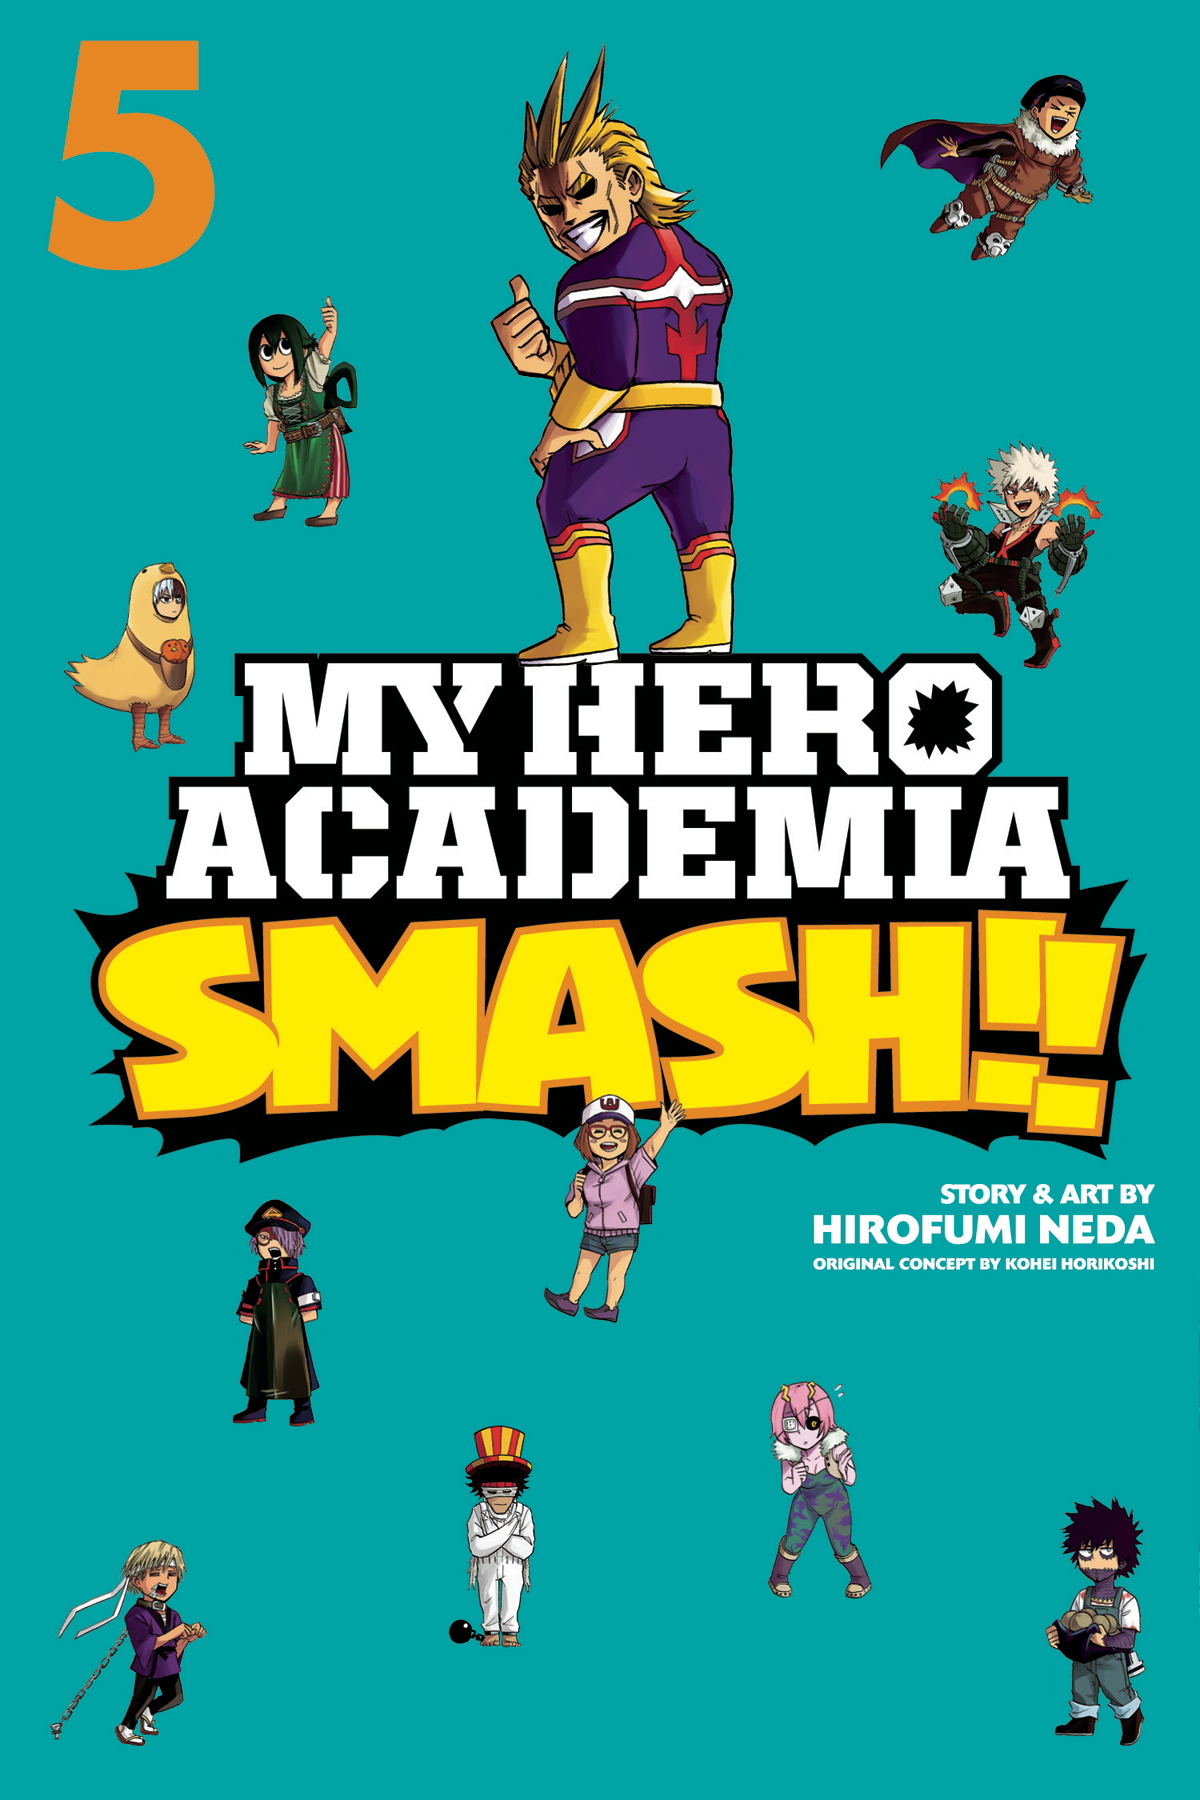 My Hero Academia Smash Manga Volume 5